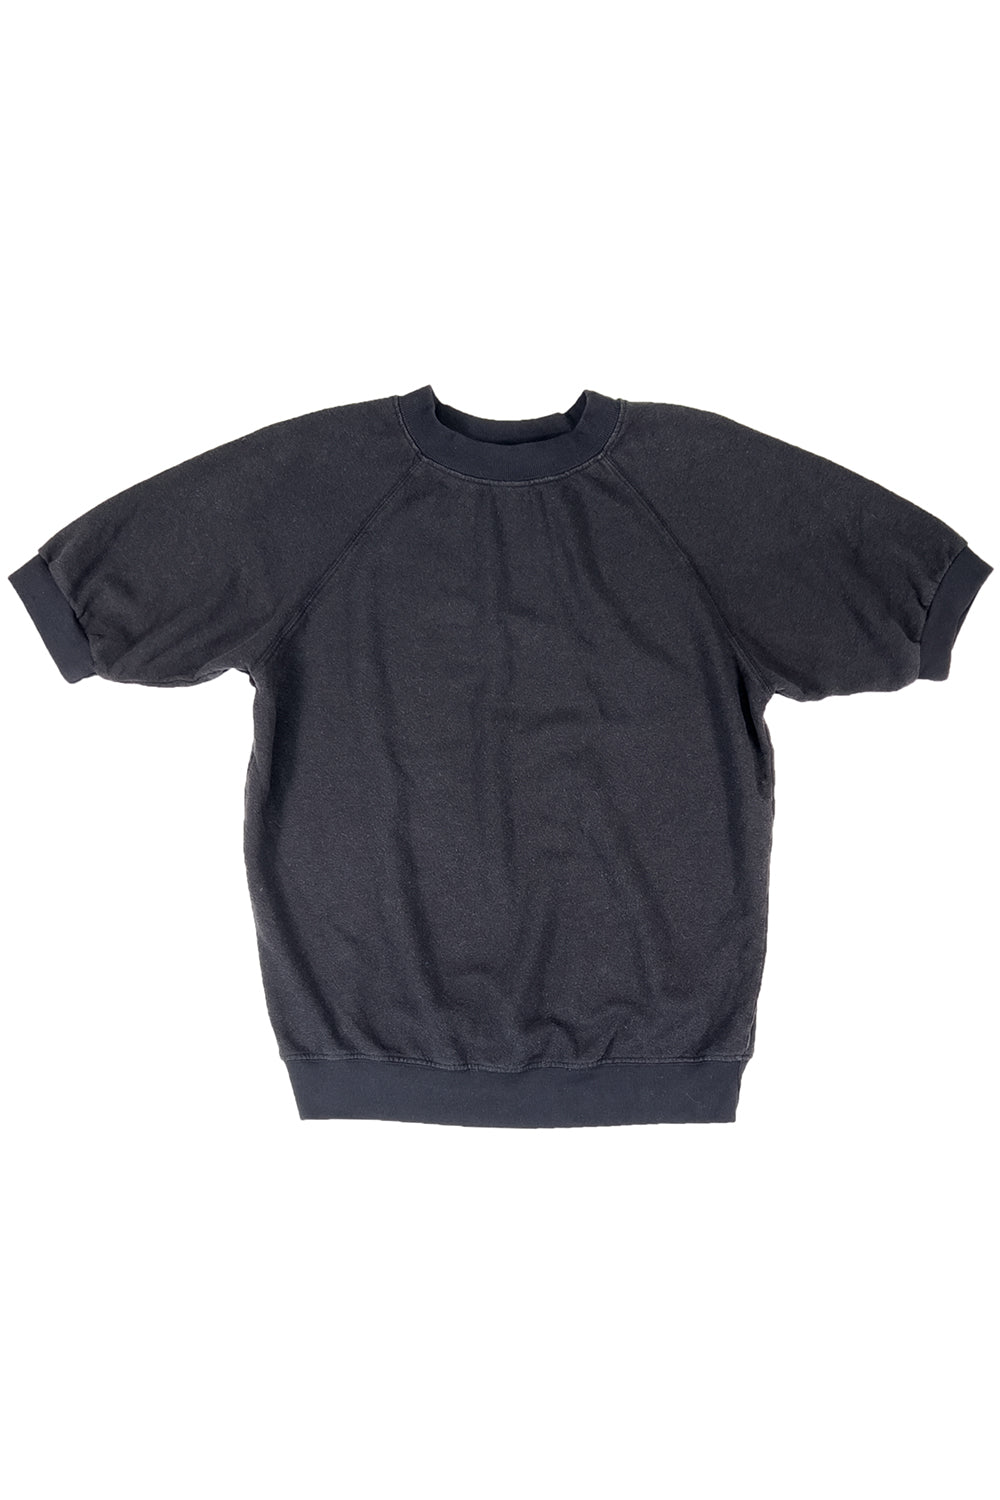 Short Sleeve Raglan Fleece Sweatshirt | Jungmaven Hemp Clothing & Accessories / Color: Black